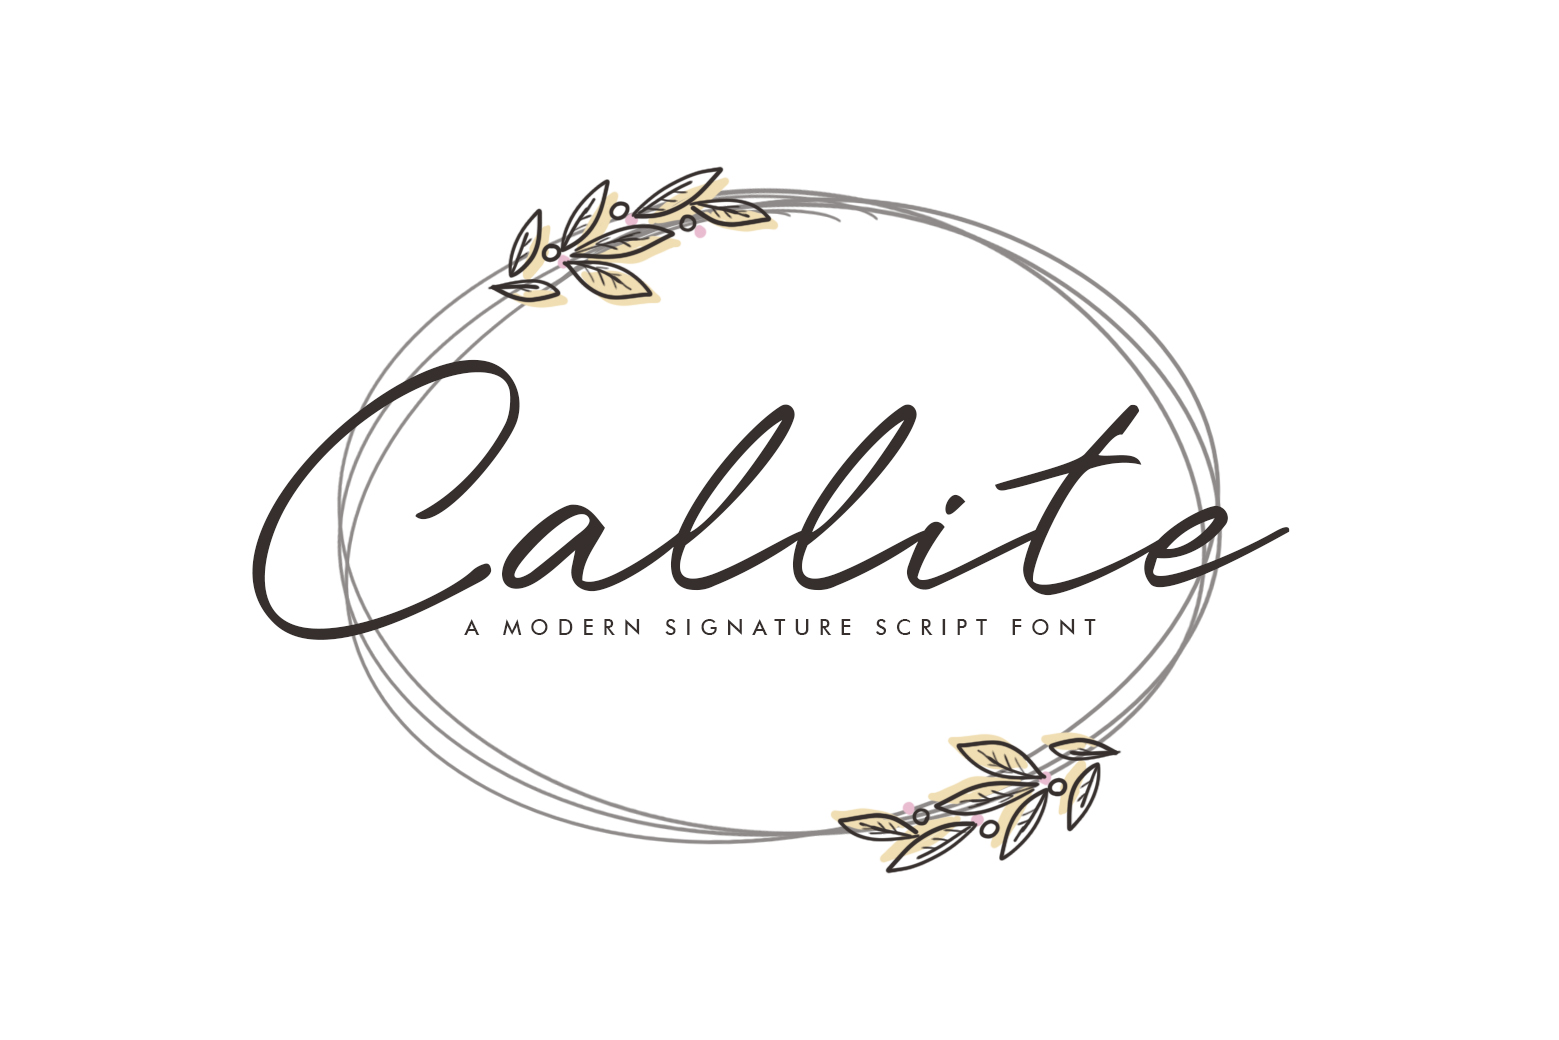 Callite